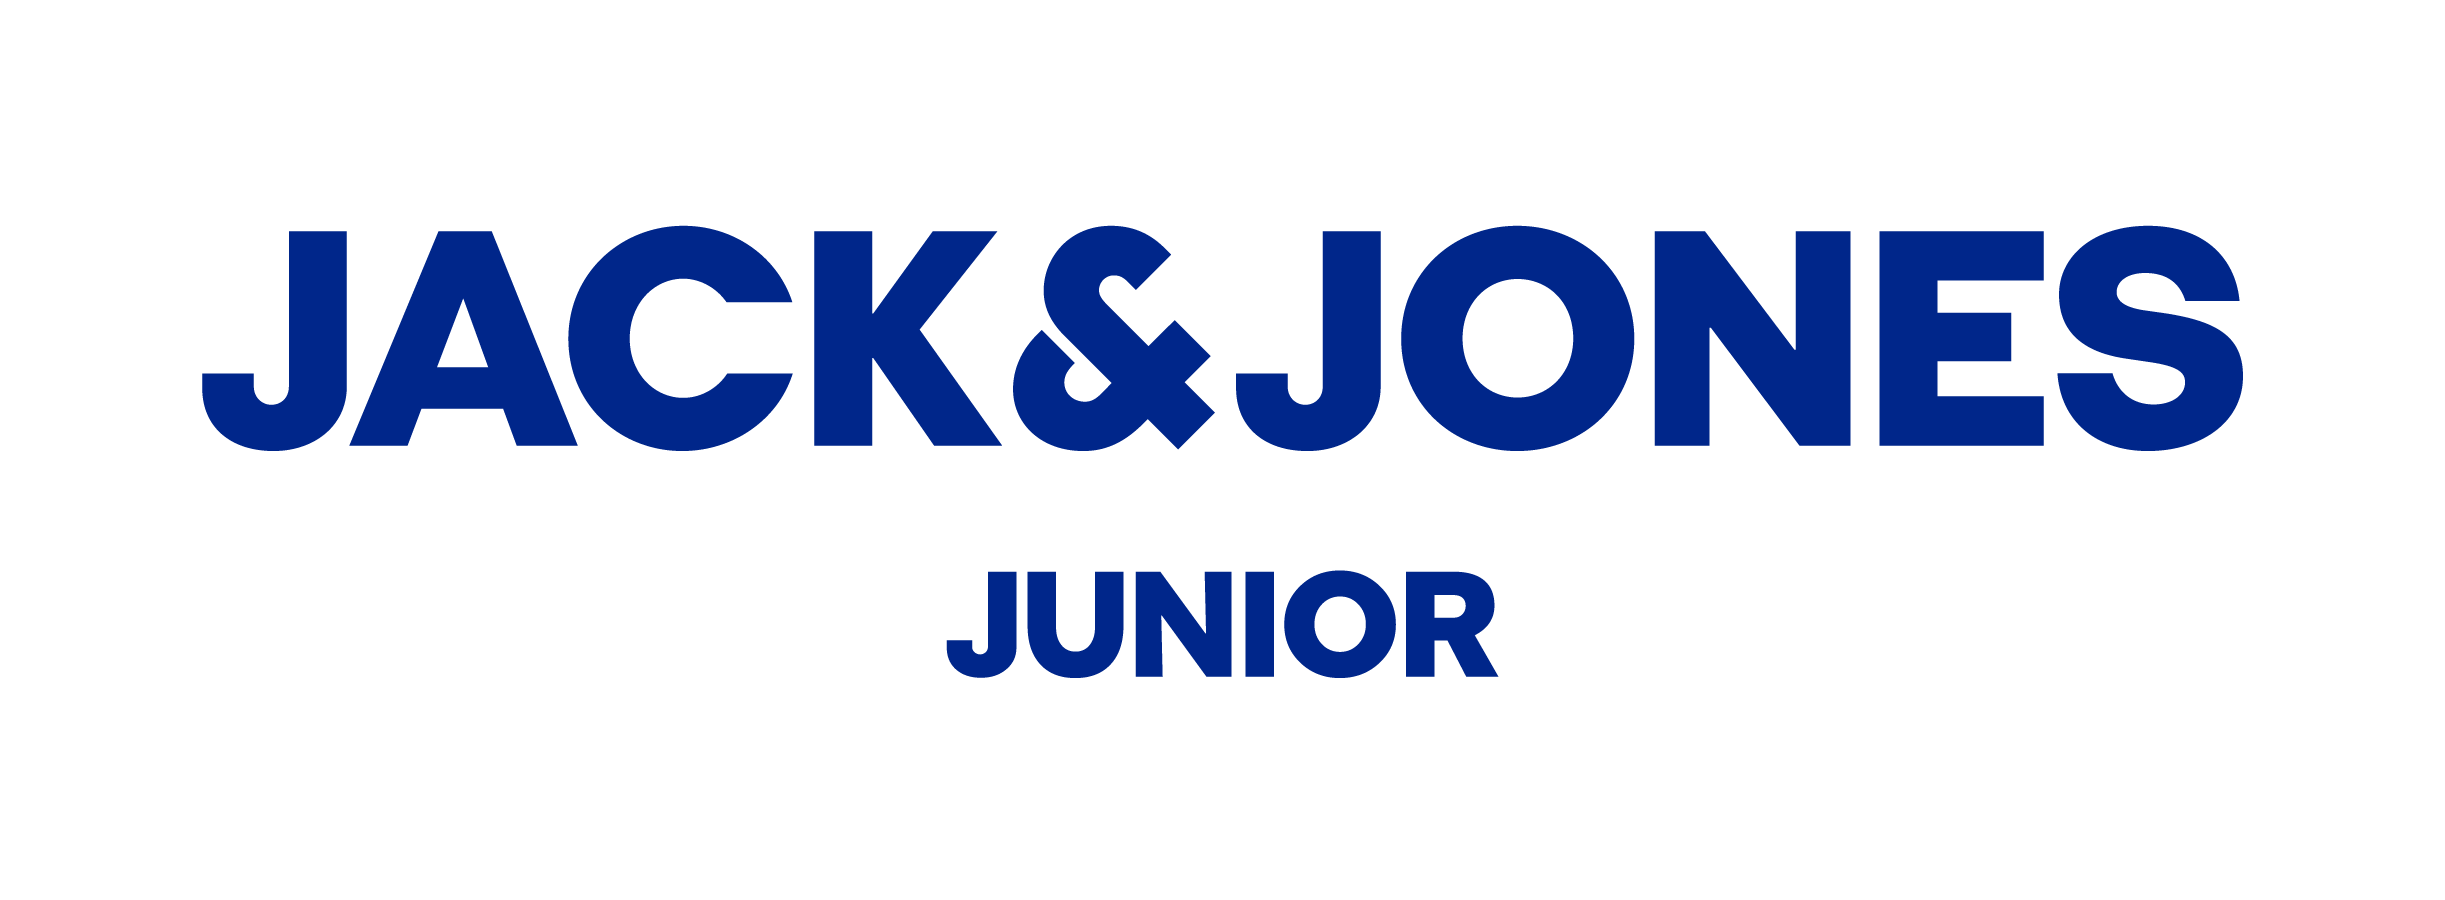 jackjones junior logo Inifniti Mall